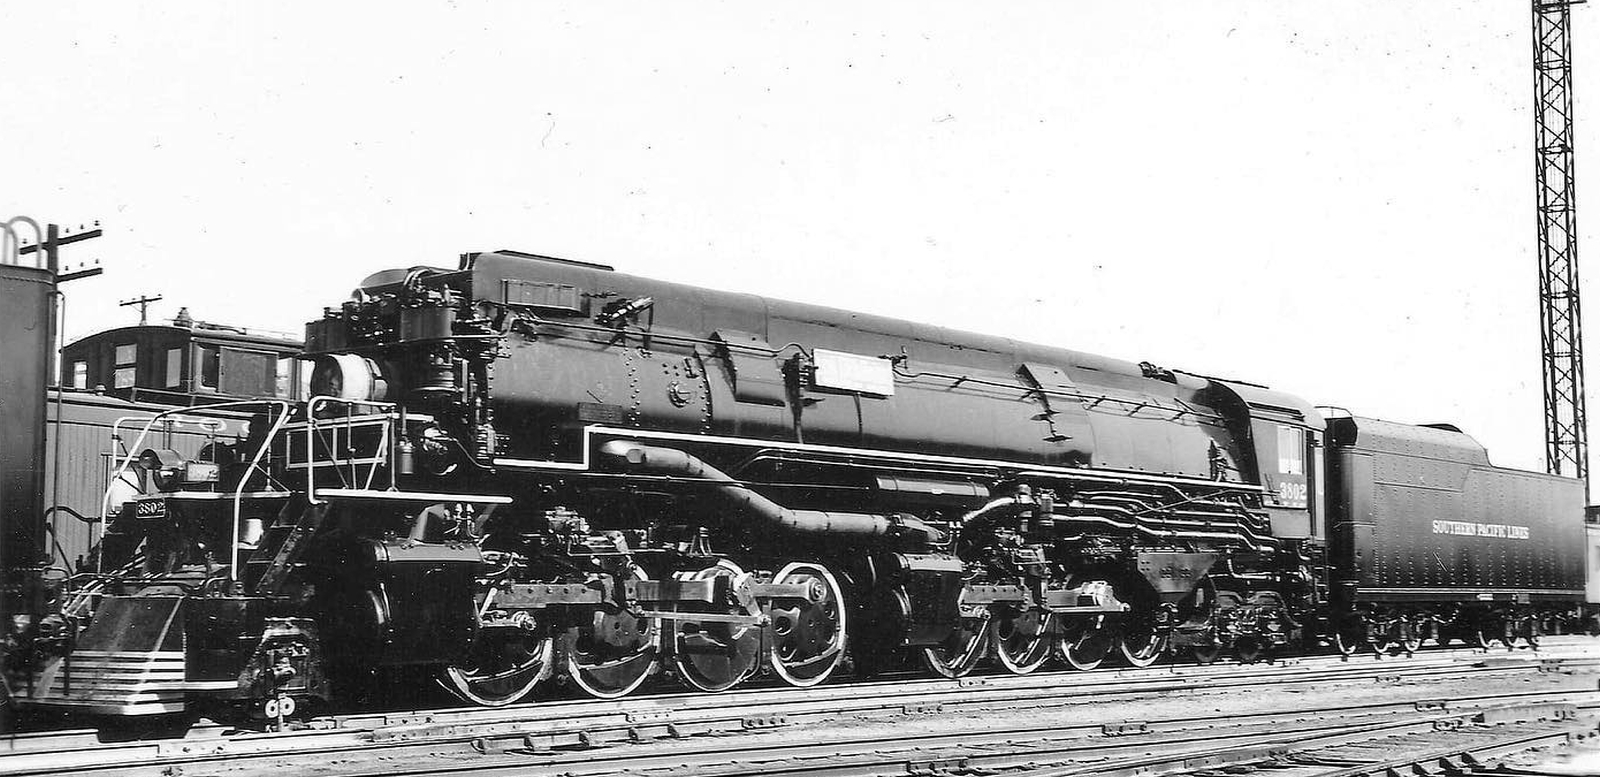 No. 3802 in October 1939 in Kansas City